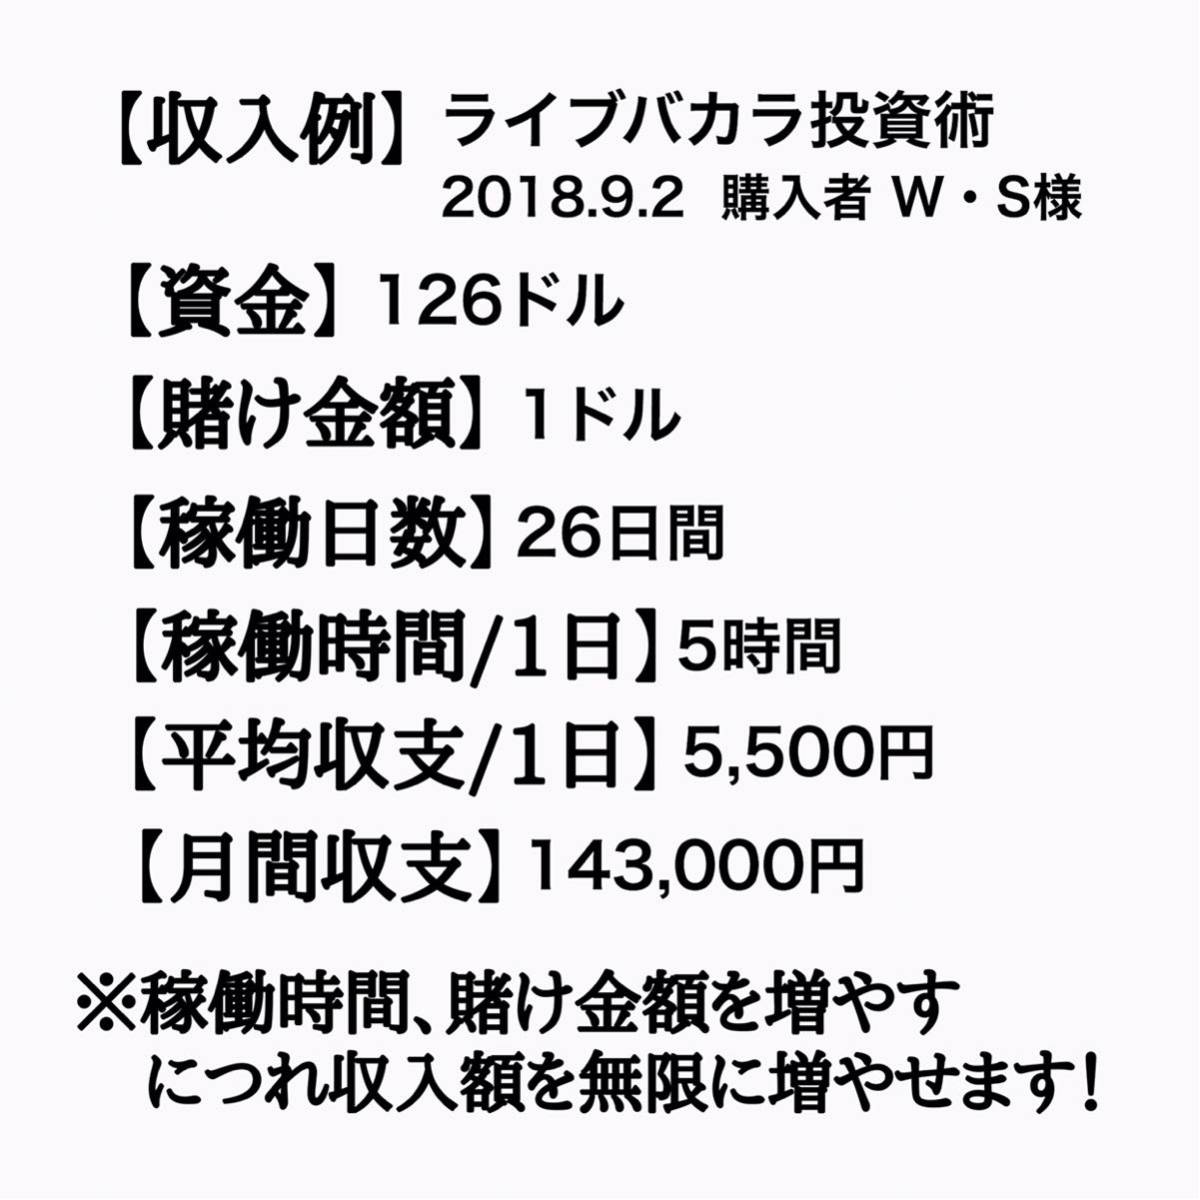 [2018/7/24 модифицировано . версия ]. золотой 2,374,000 иен . изначальный рука 5 десять тысяч иен из начинать незначительный 2 месяцев .. settled завершение . удар. высшее . инвестирование .!. индустрия бизнес стратегия 16